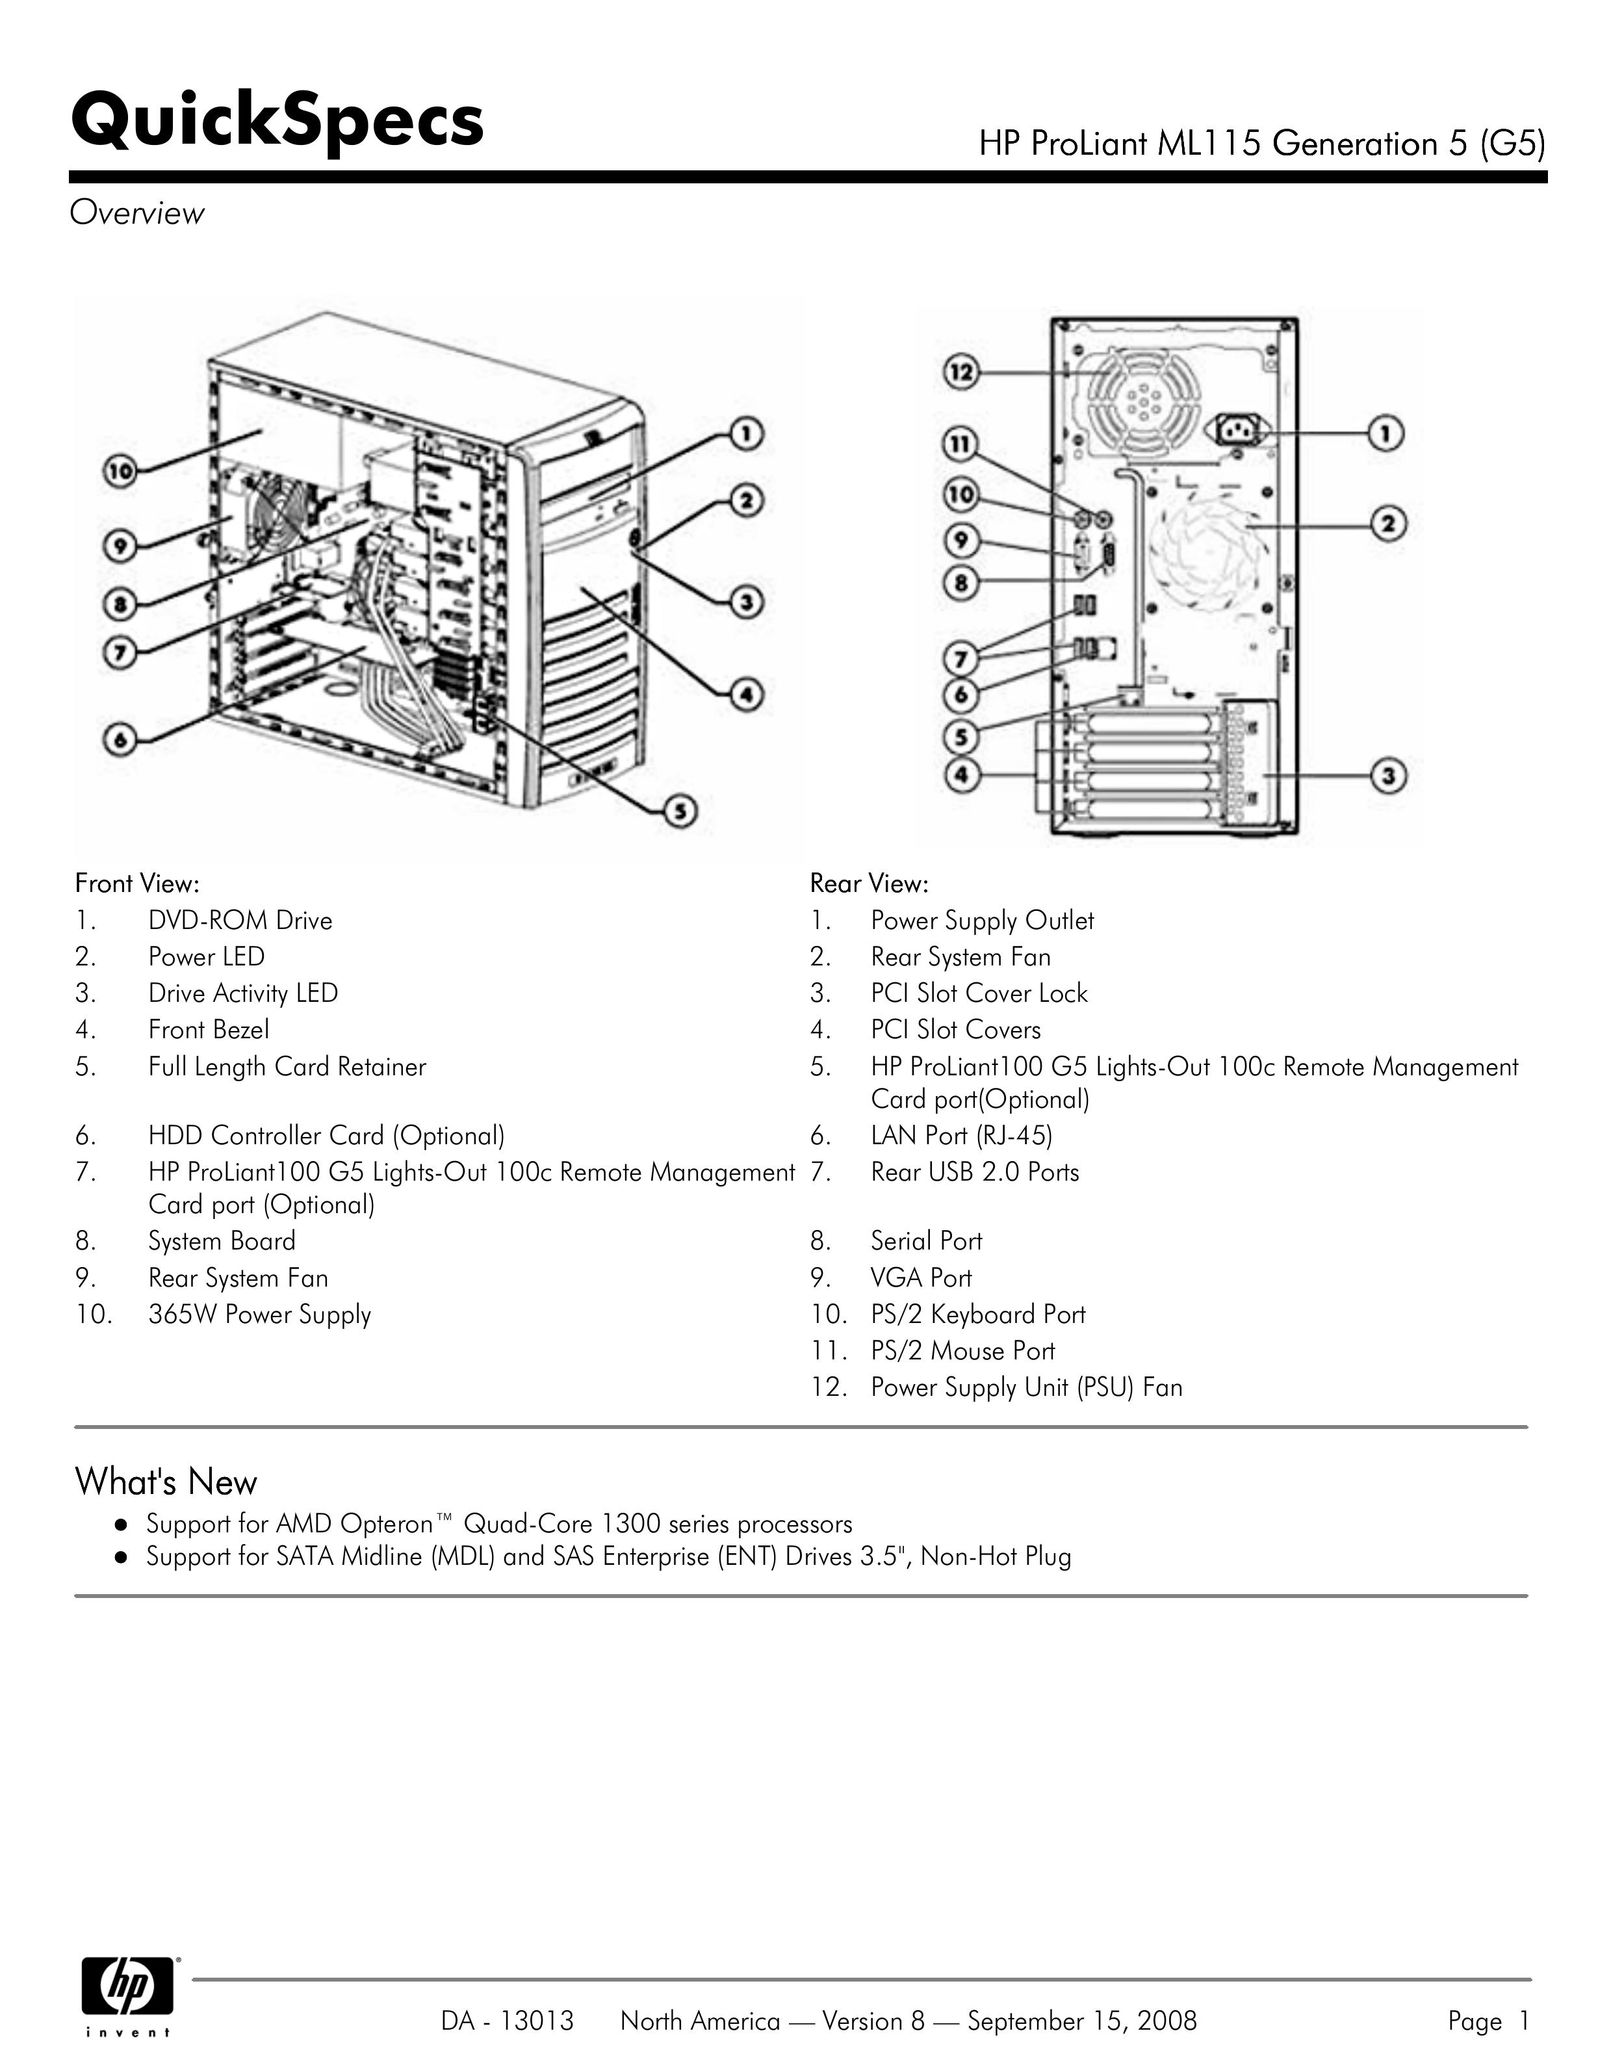 HP (Hewlett-Packard) ML115 Computer Hardware User Manual